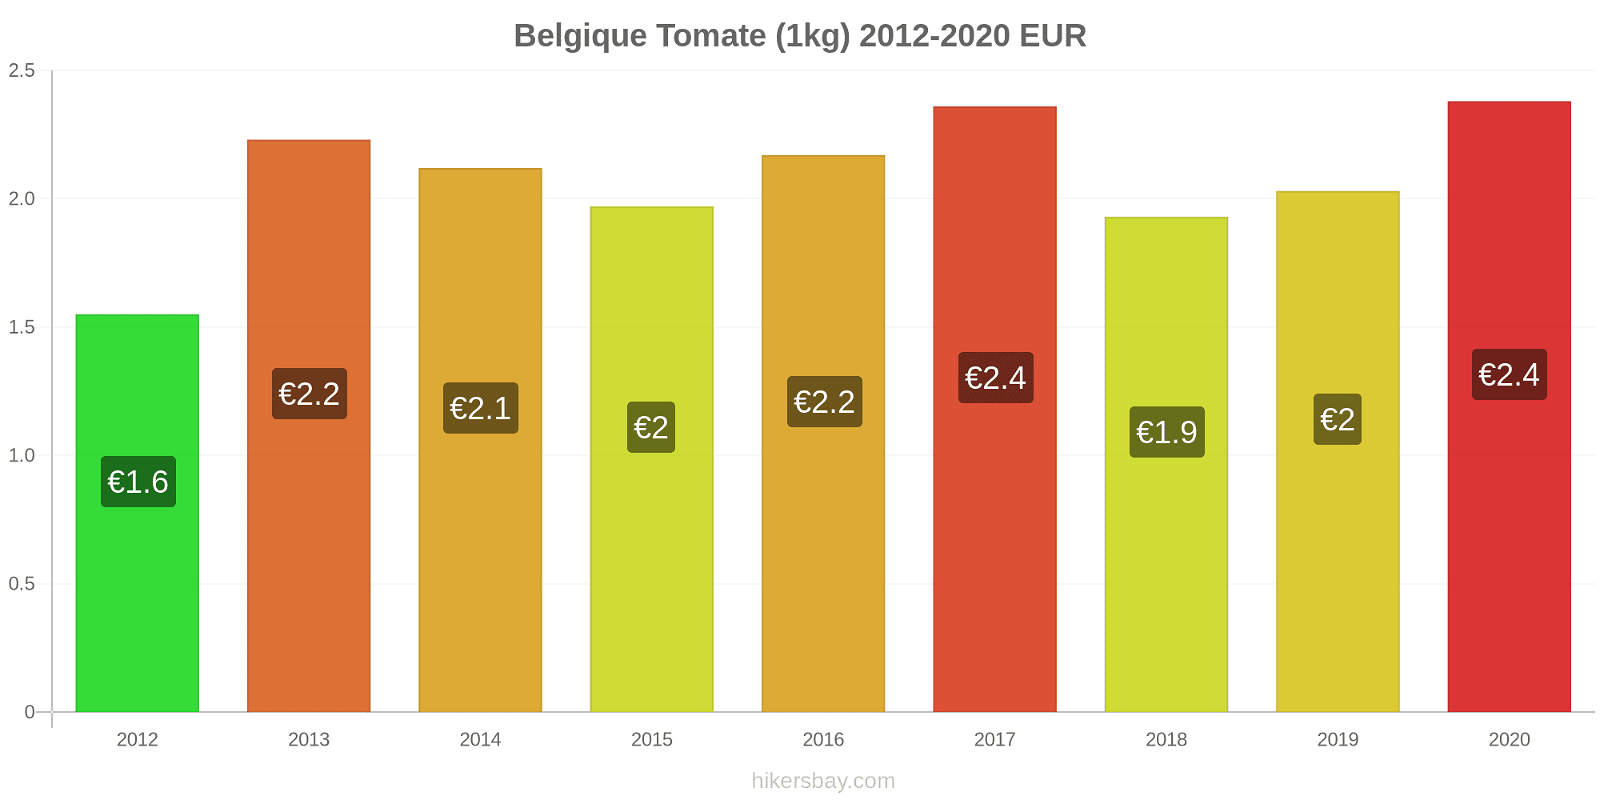 Belgique changements de prix Tomate (1kg) hikersbay.com